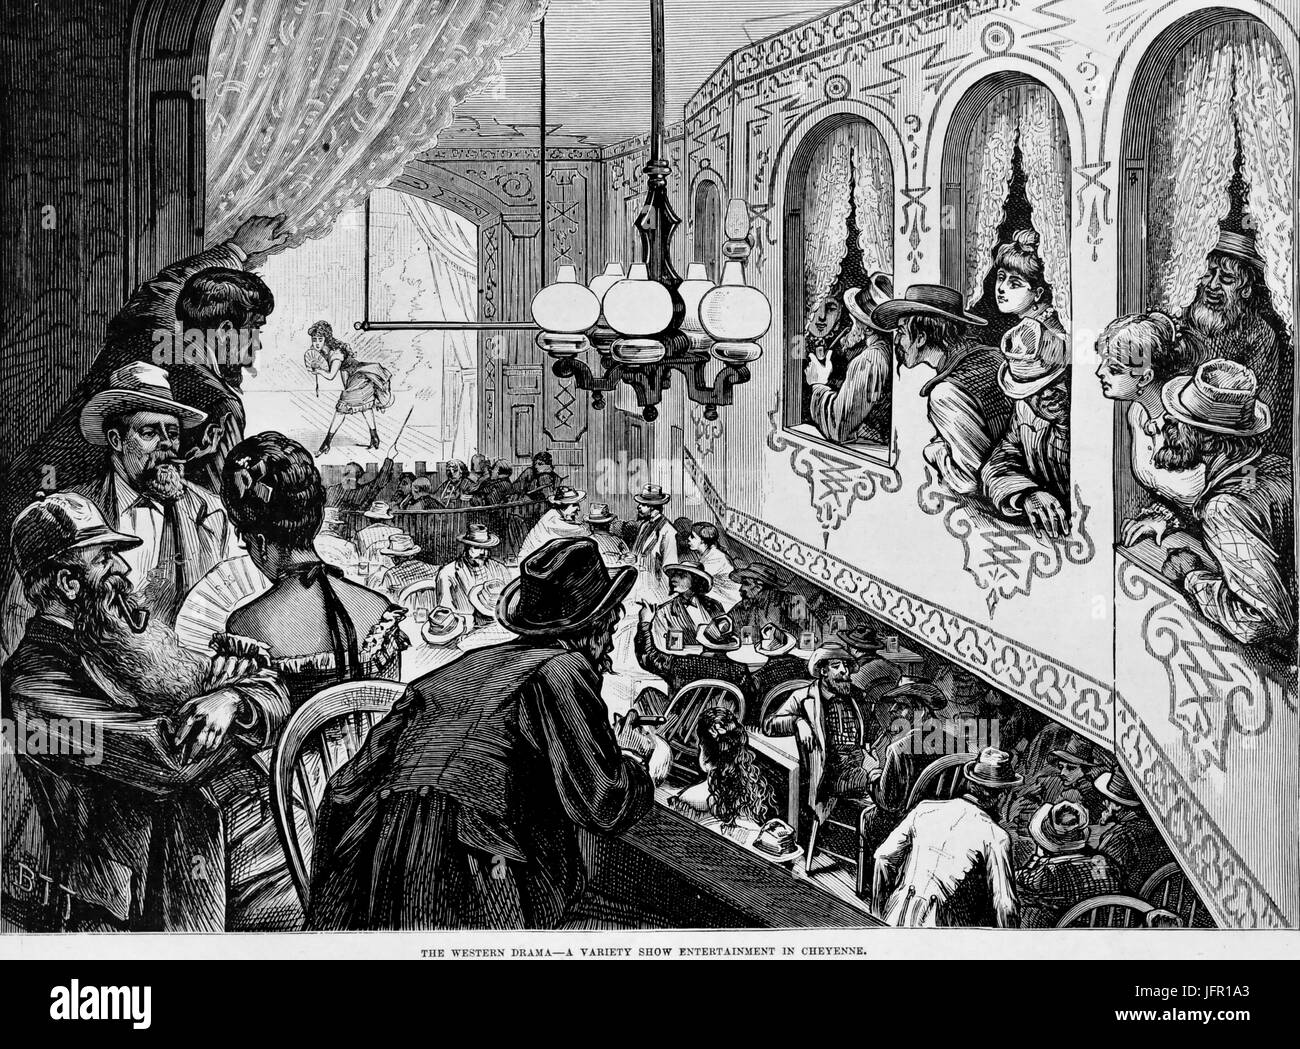 Ilustración mostrando un espectáculo variado entretenimiento en una berlina, Cheyenne, WY, 1870. Foto de stock